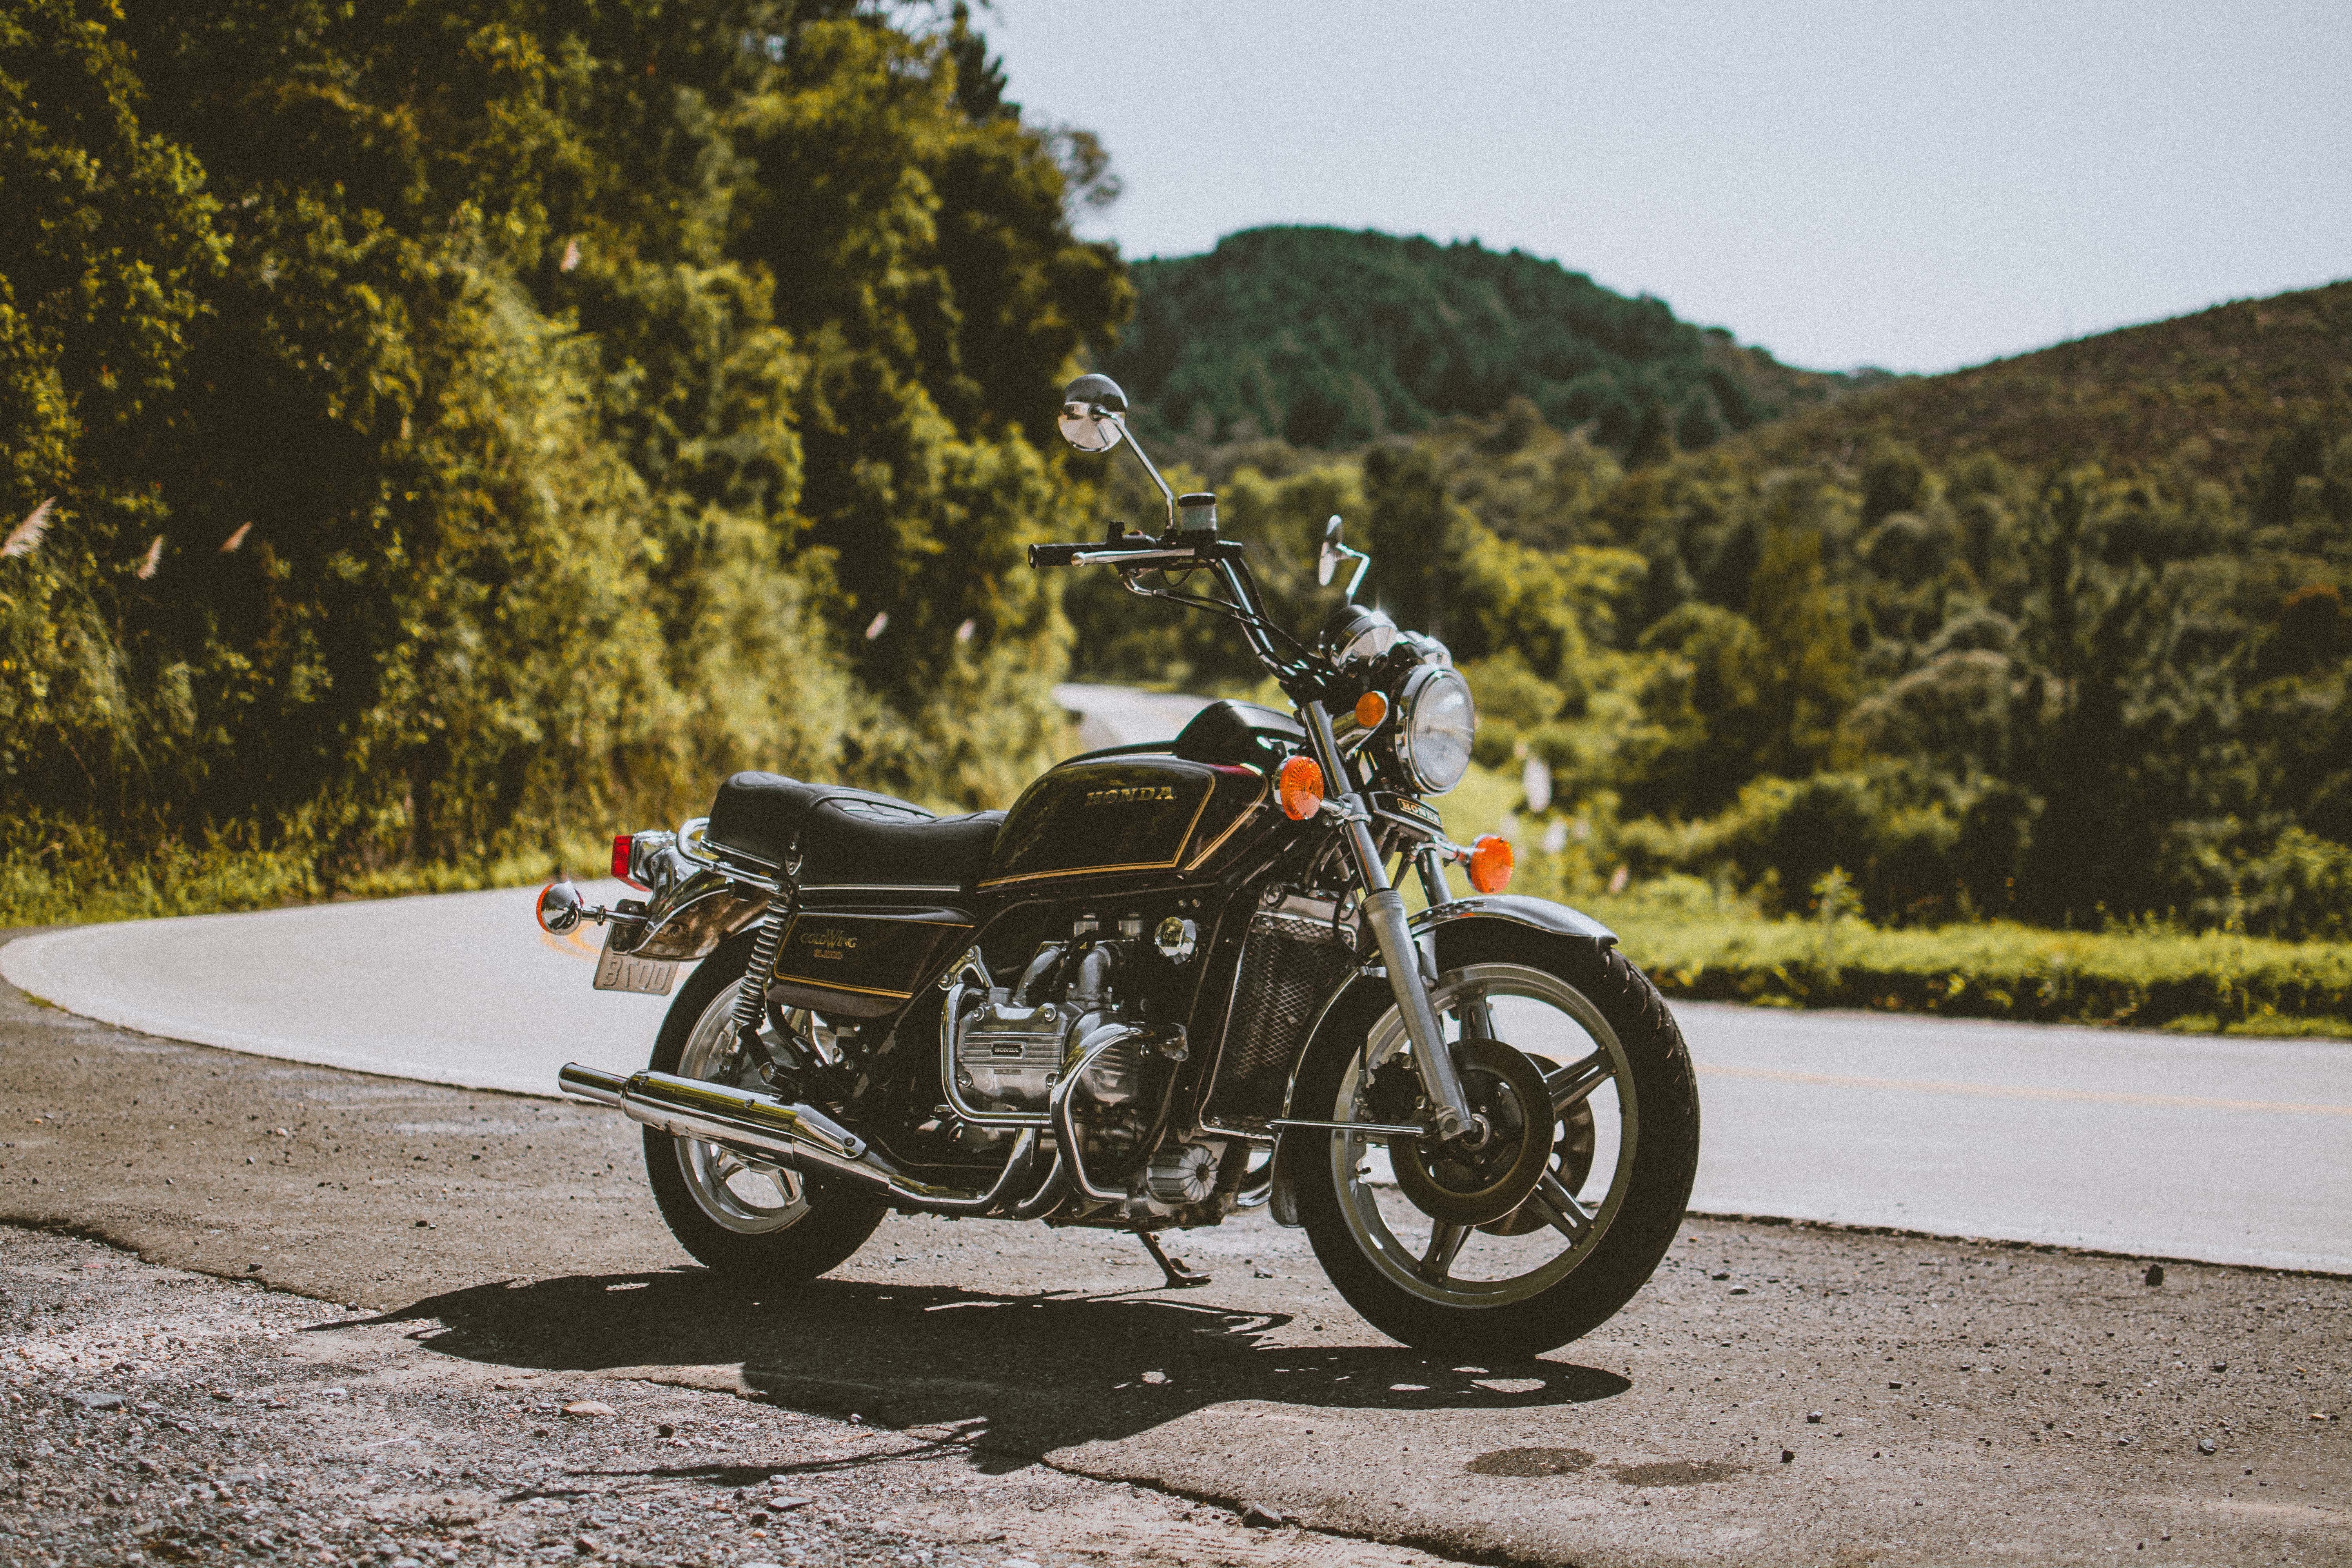 bike, honda, motorcycles, black, side view, motorcycle Image for desktop